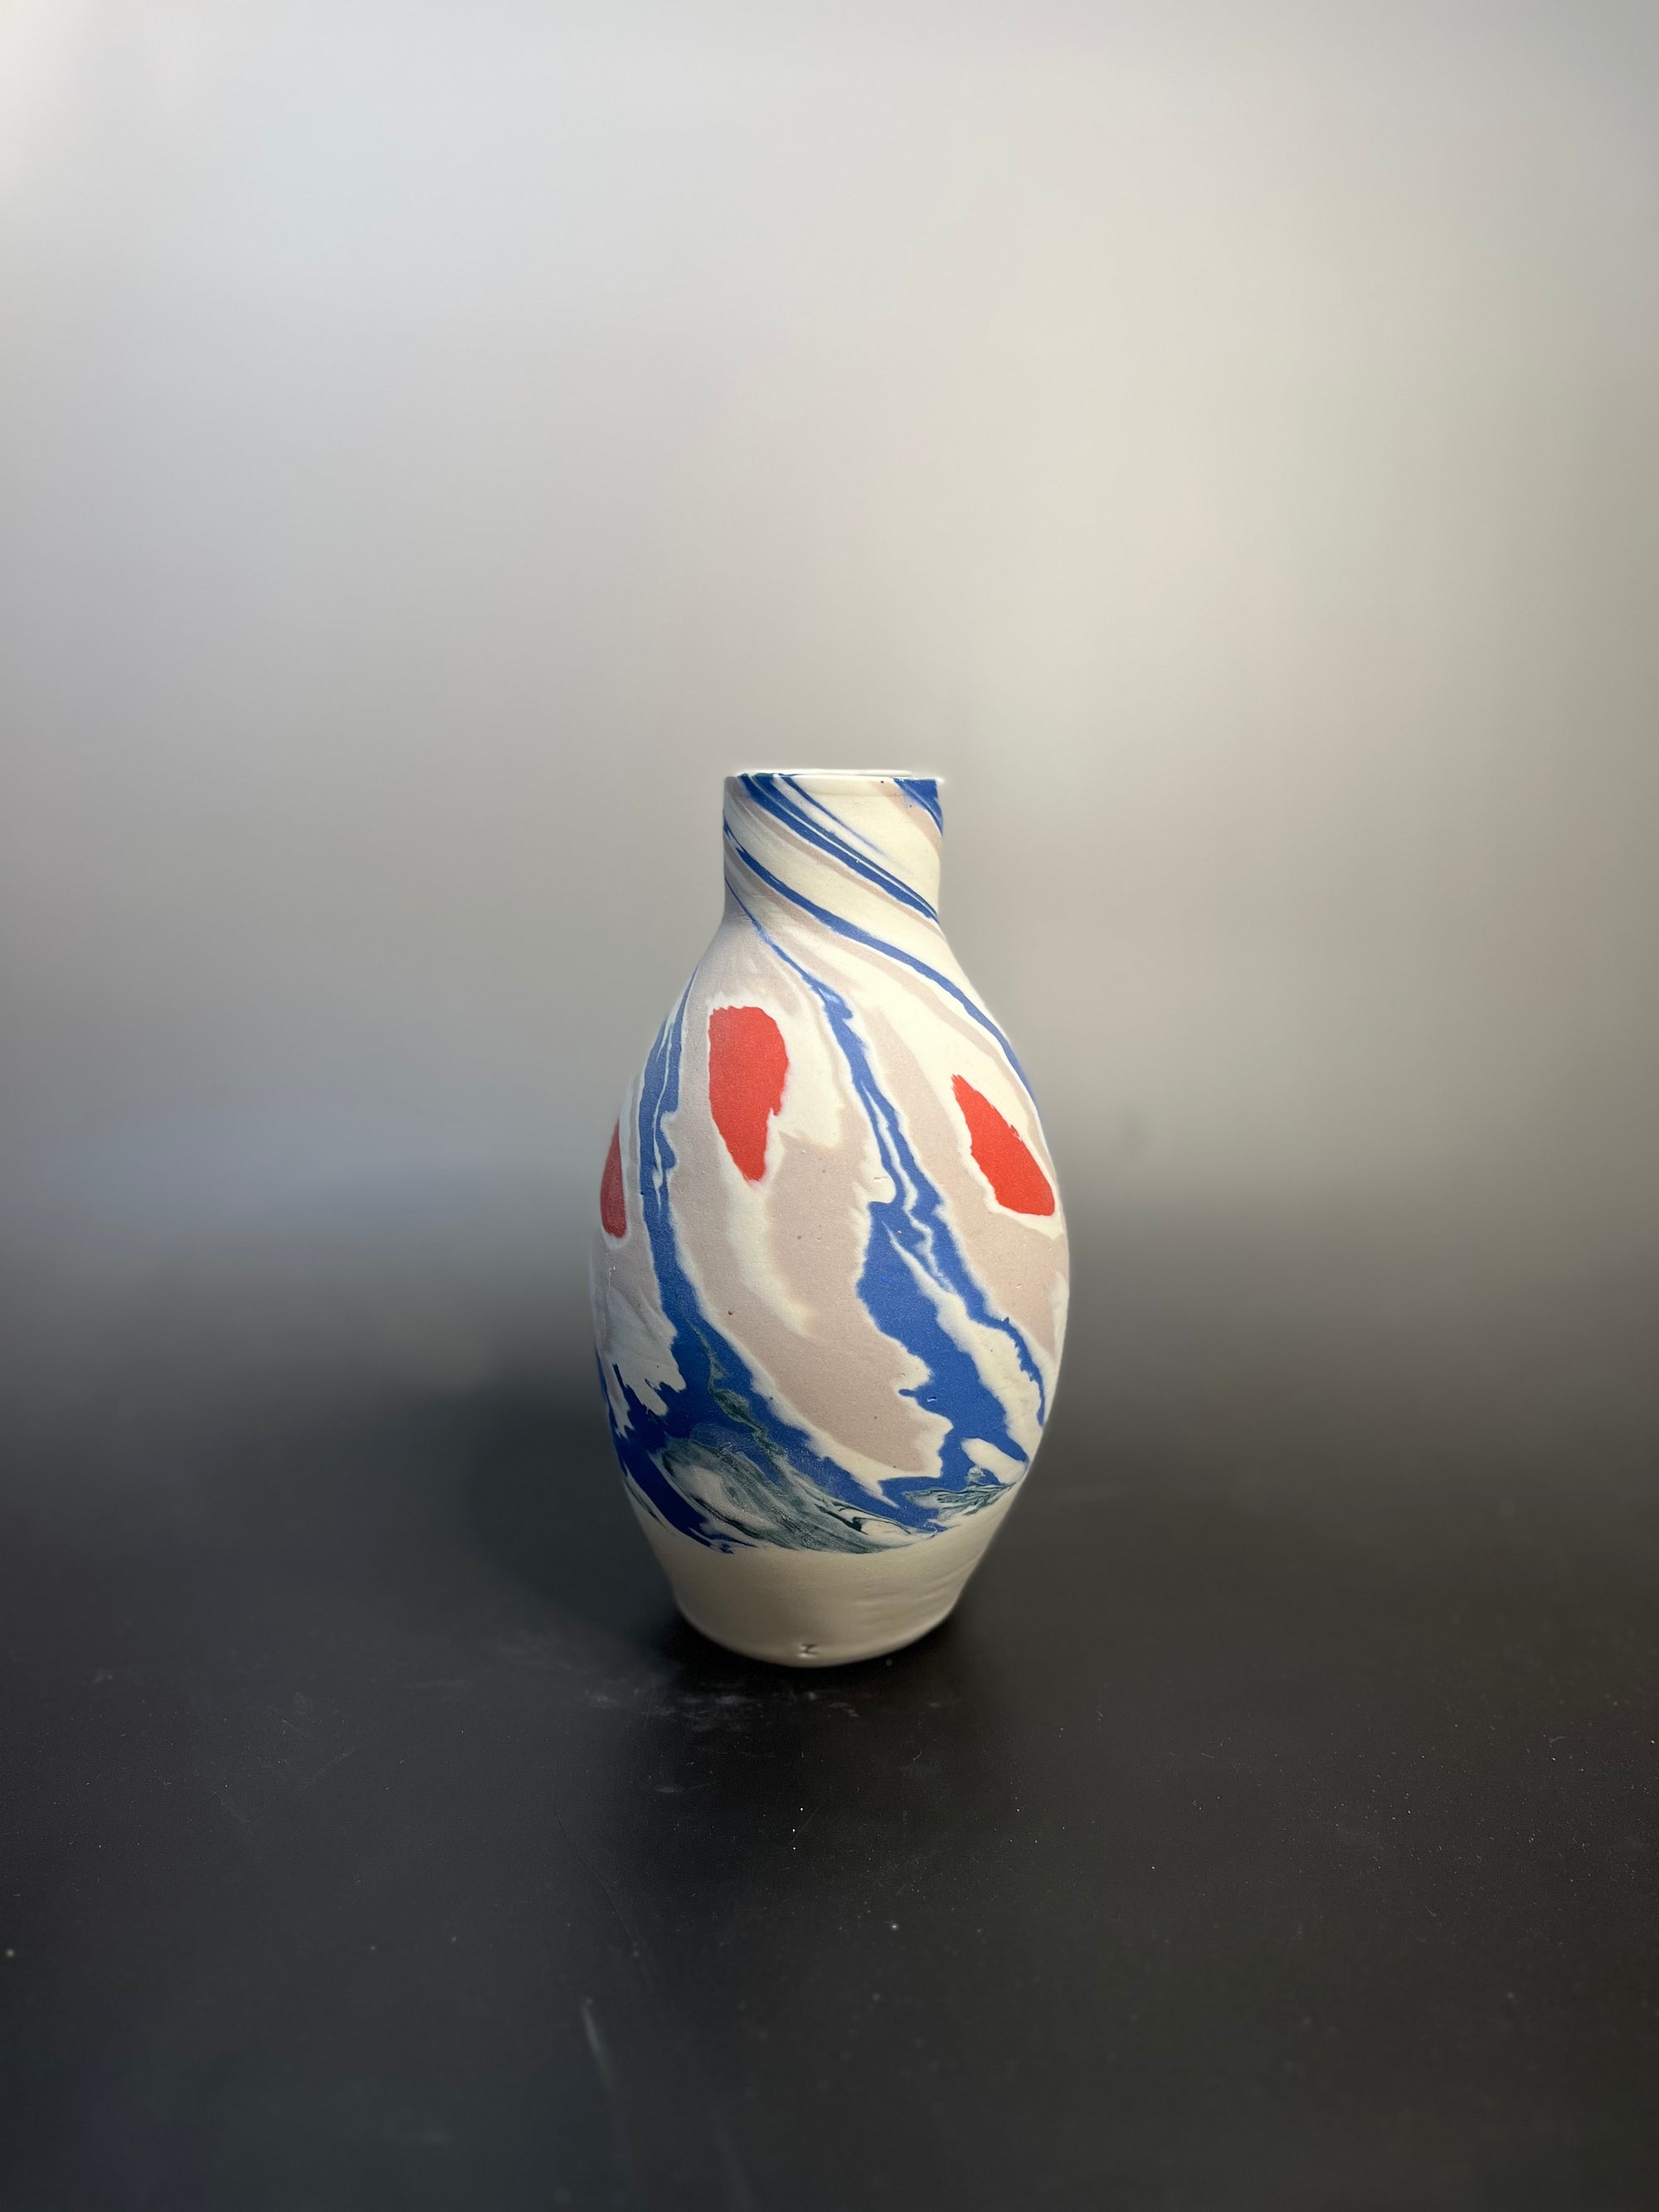 Medium sized nerikomi vase